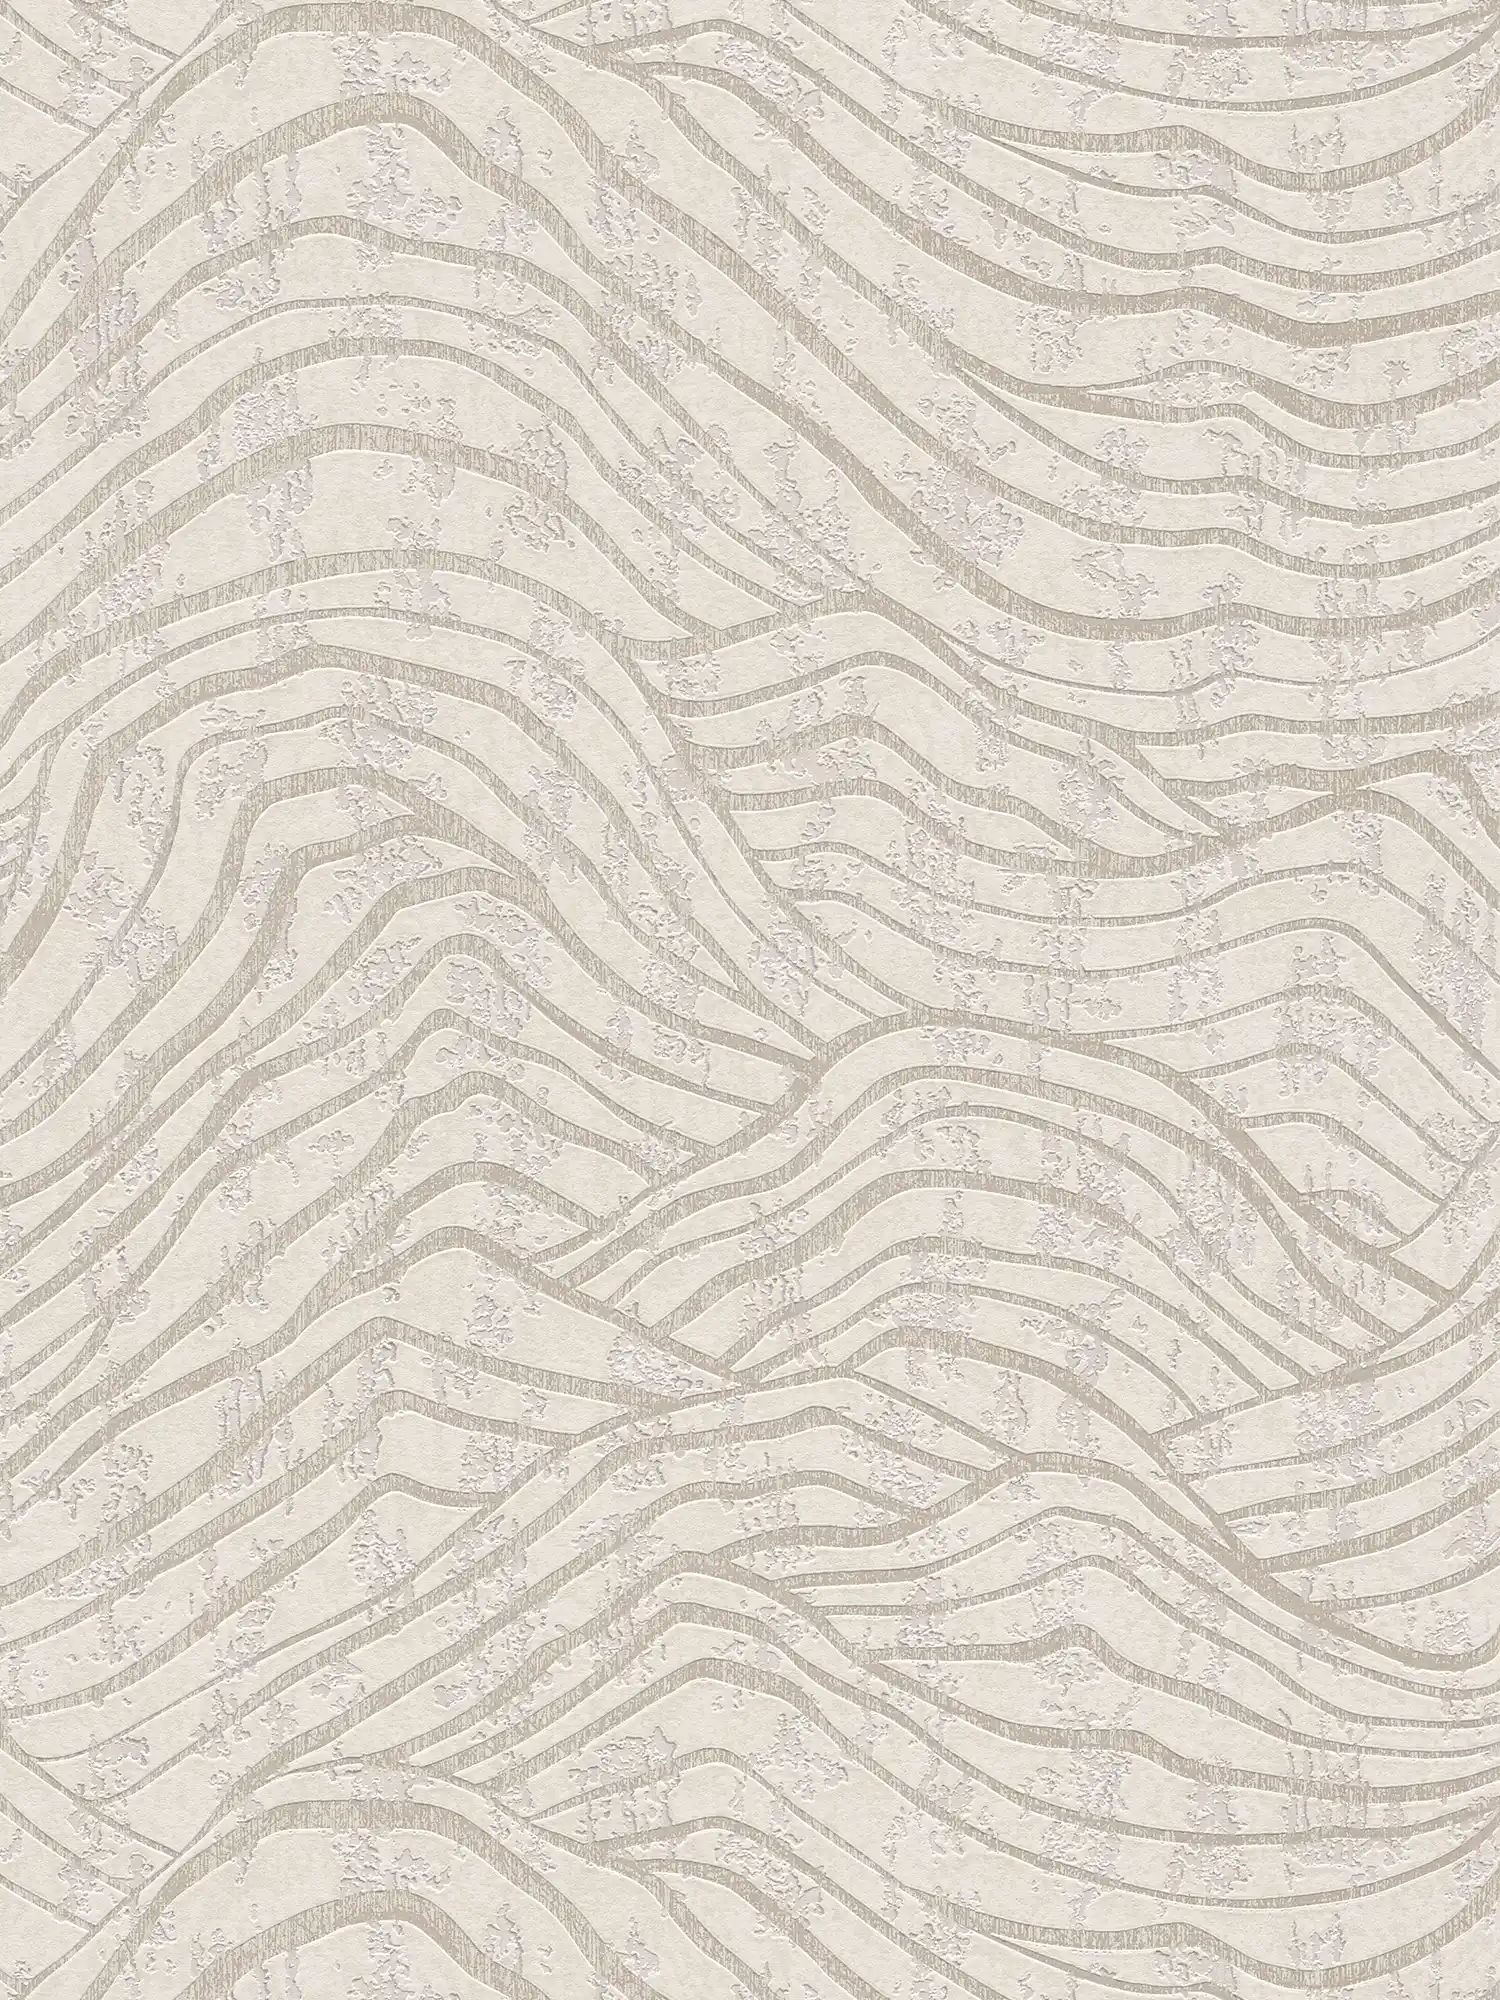 Abstract behang met heuvelpatroon in zachte kleuren - wit, zilver
